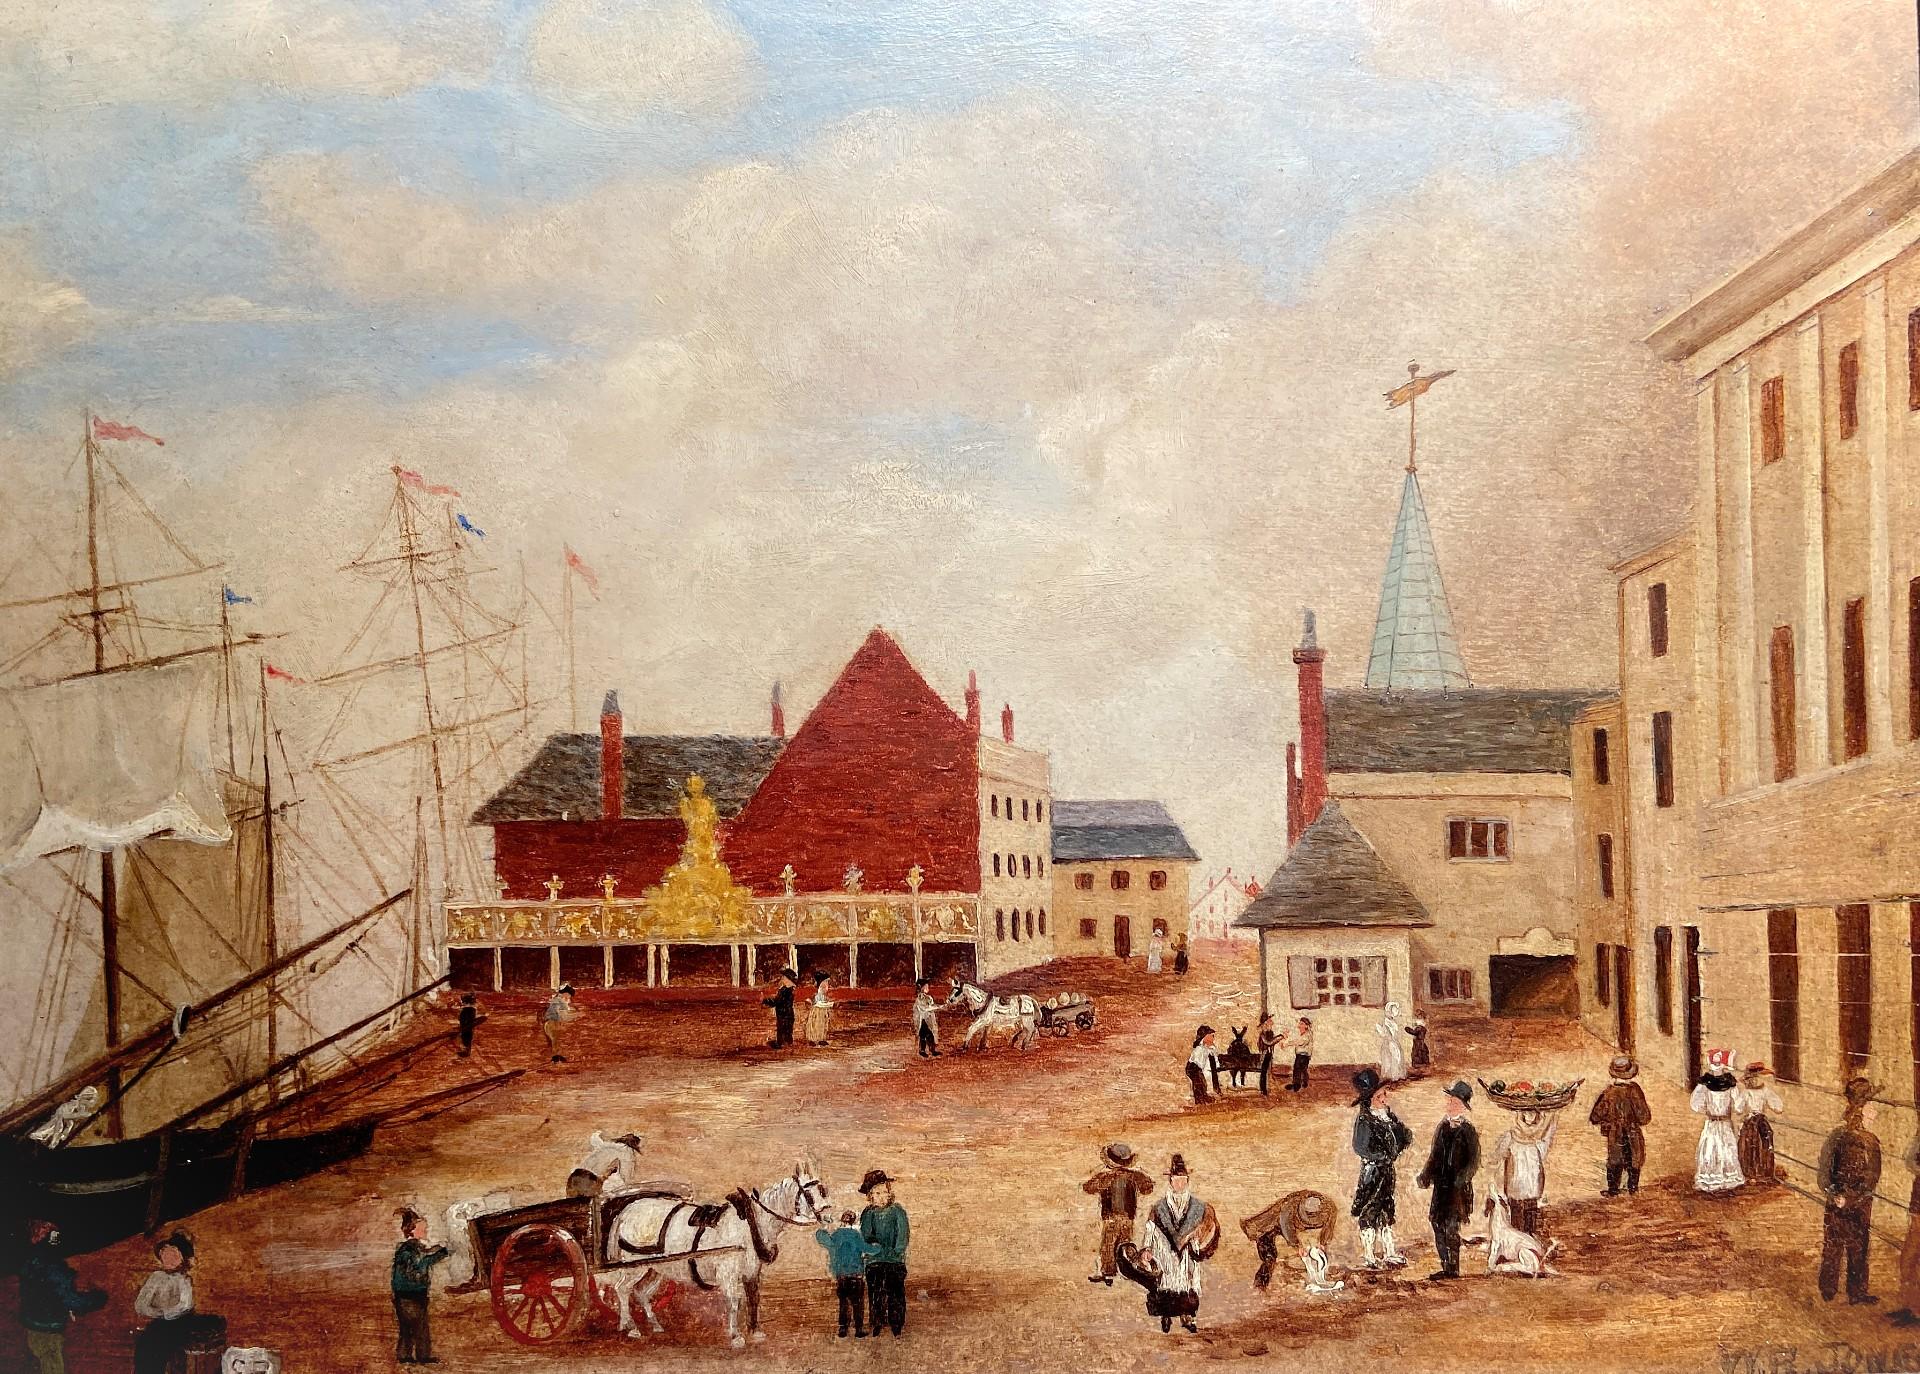 Primitive school Landscape Painting - The Old Quay, Barnstaple, 19th Century Oil Landscape